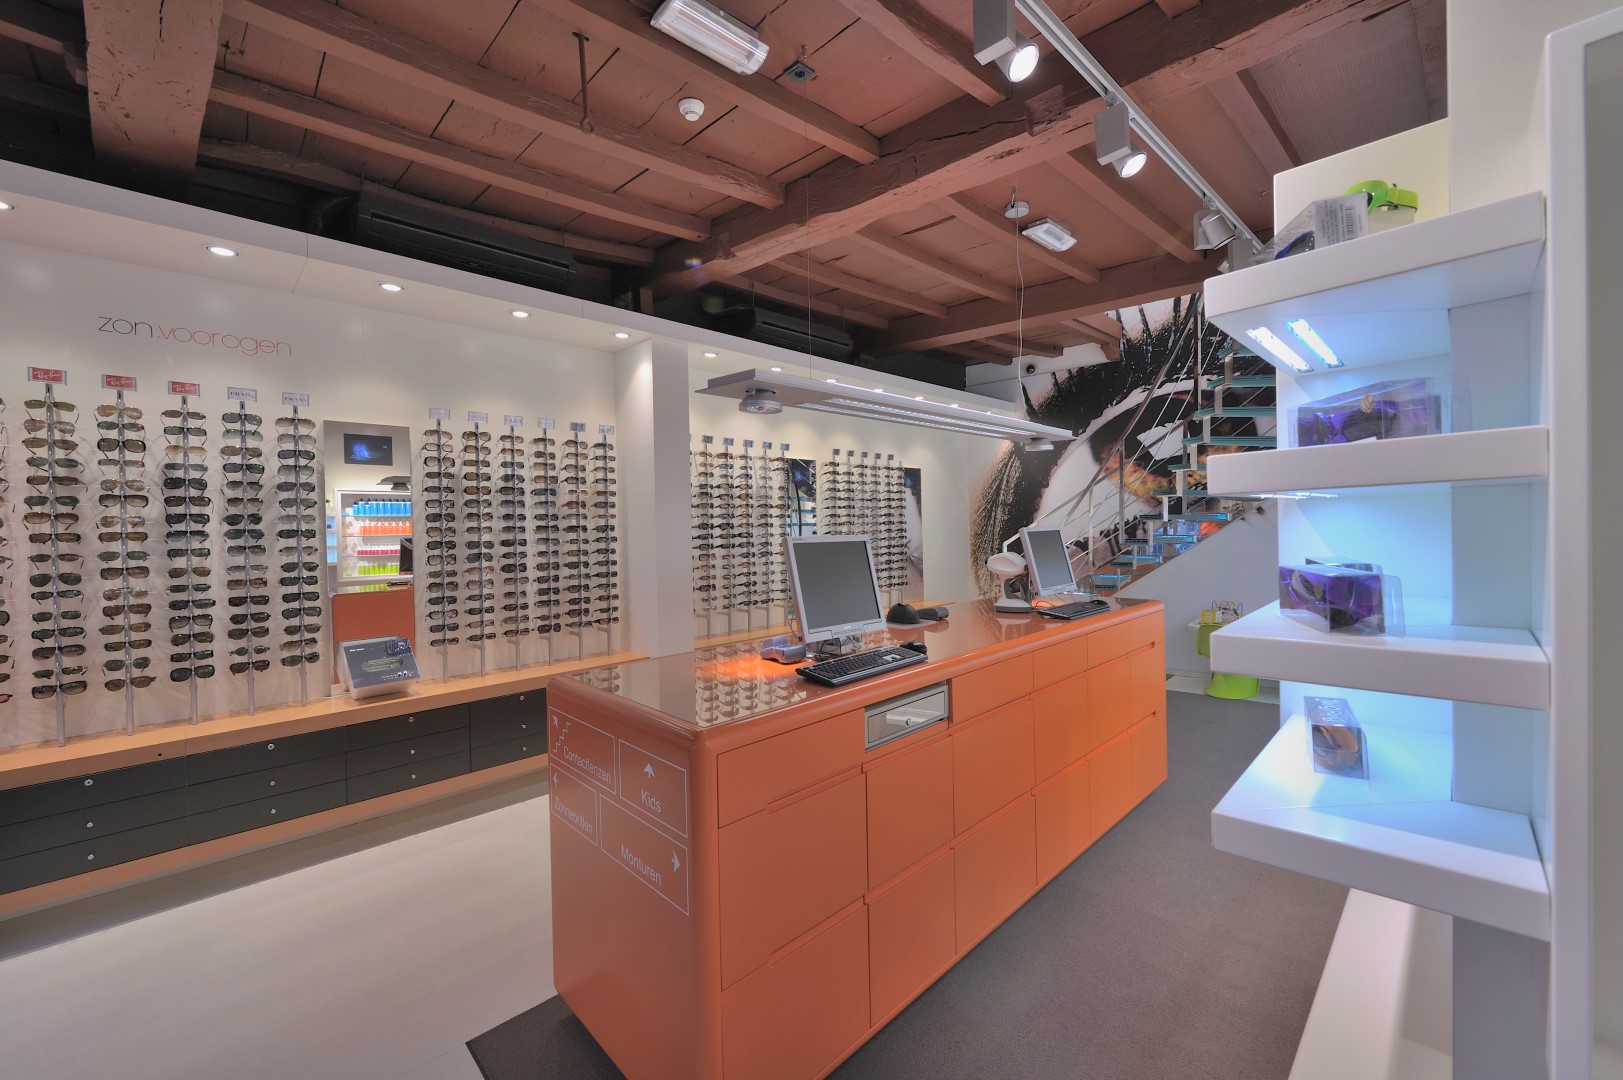 Jochem for eyes: Interior design + made - Optician